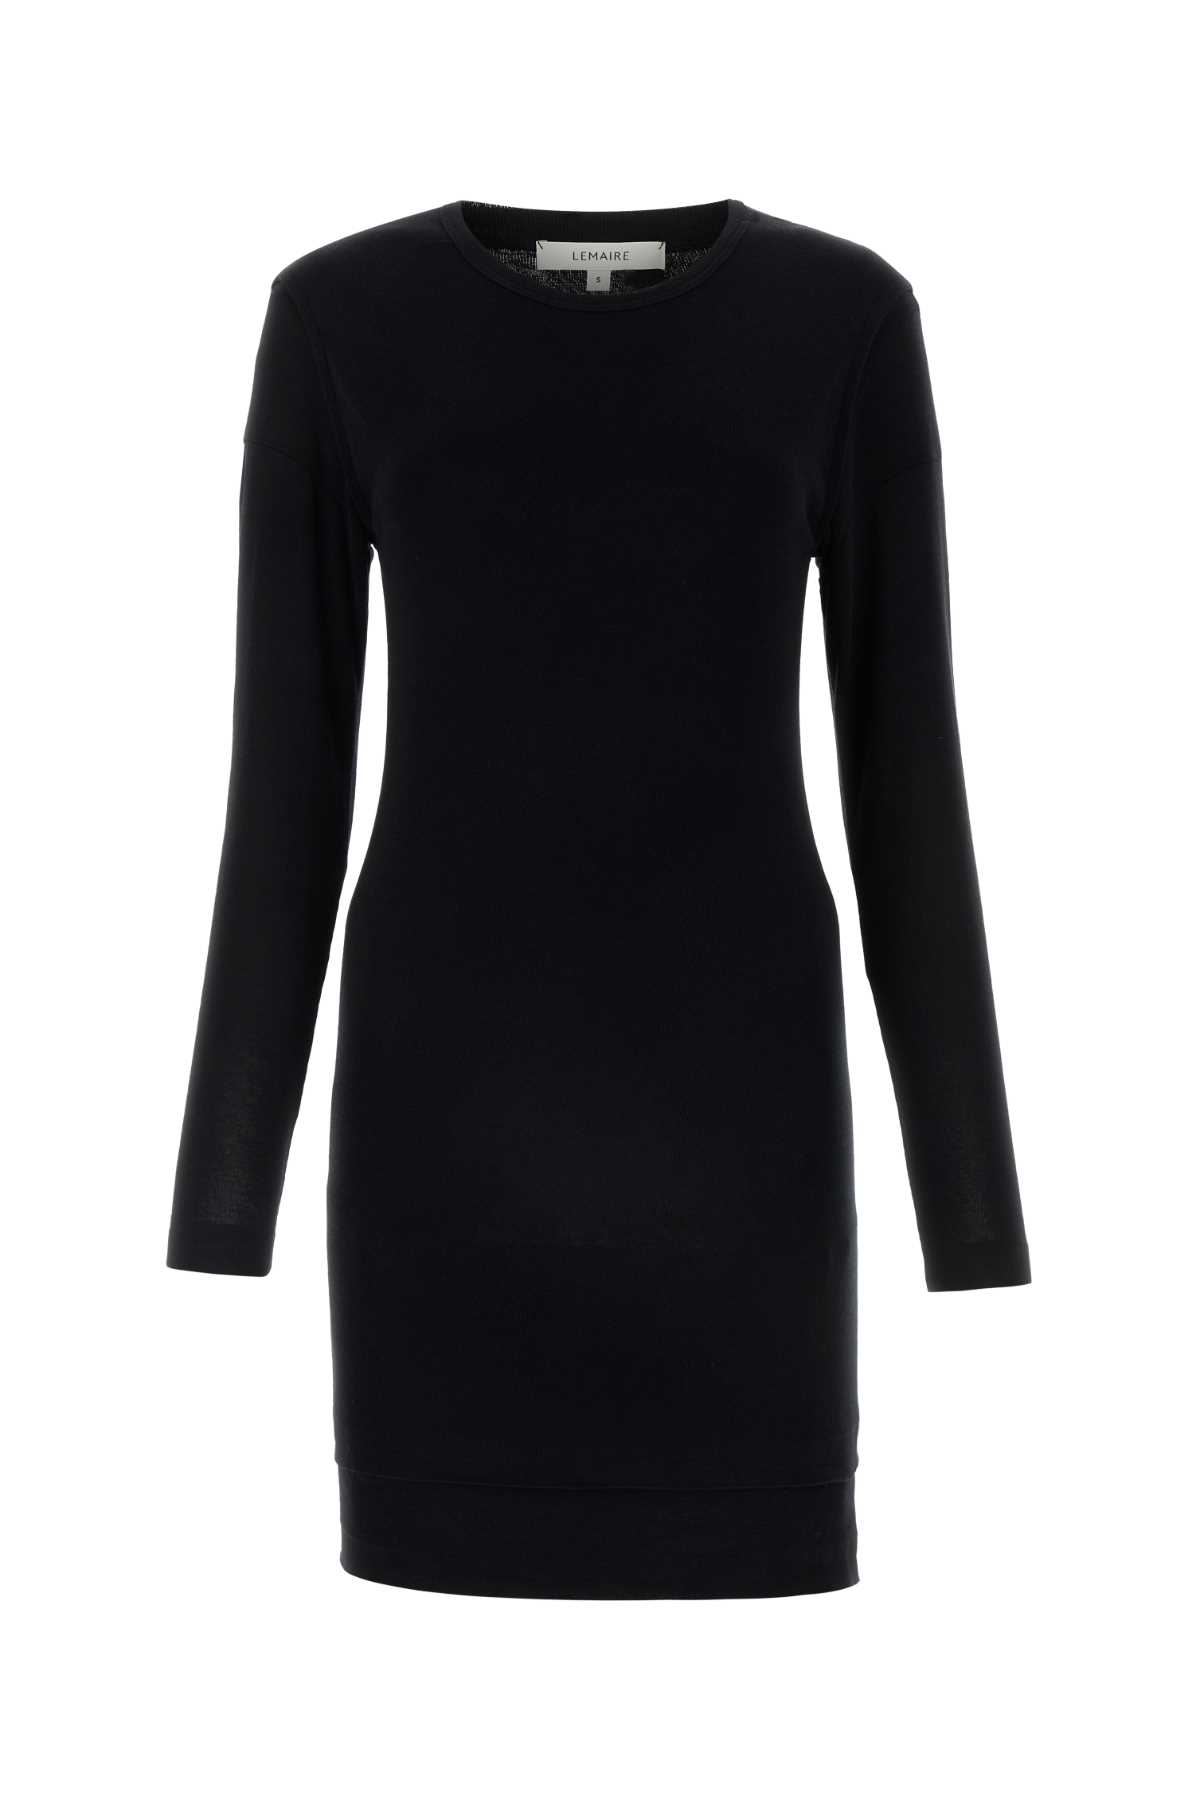 Shop Lemaire Black Cotton Dress